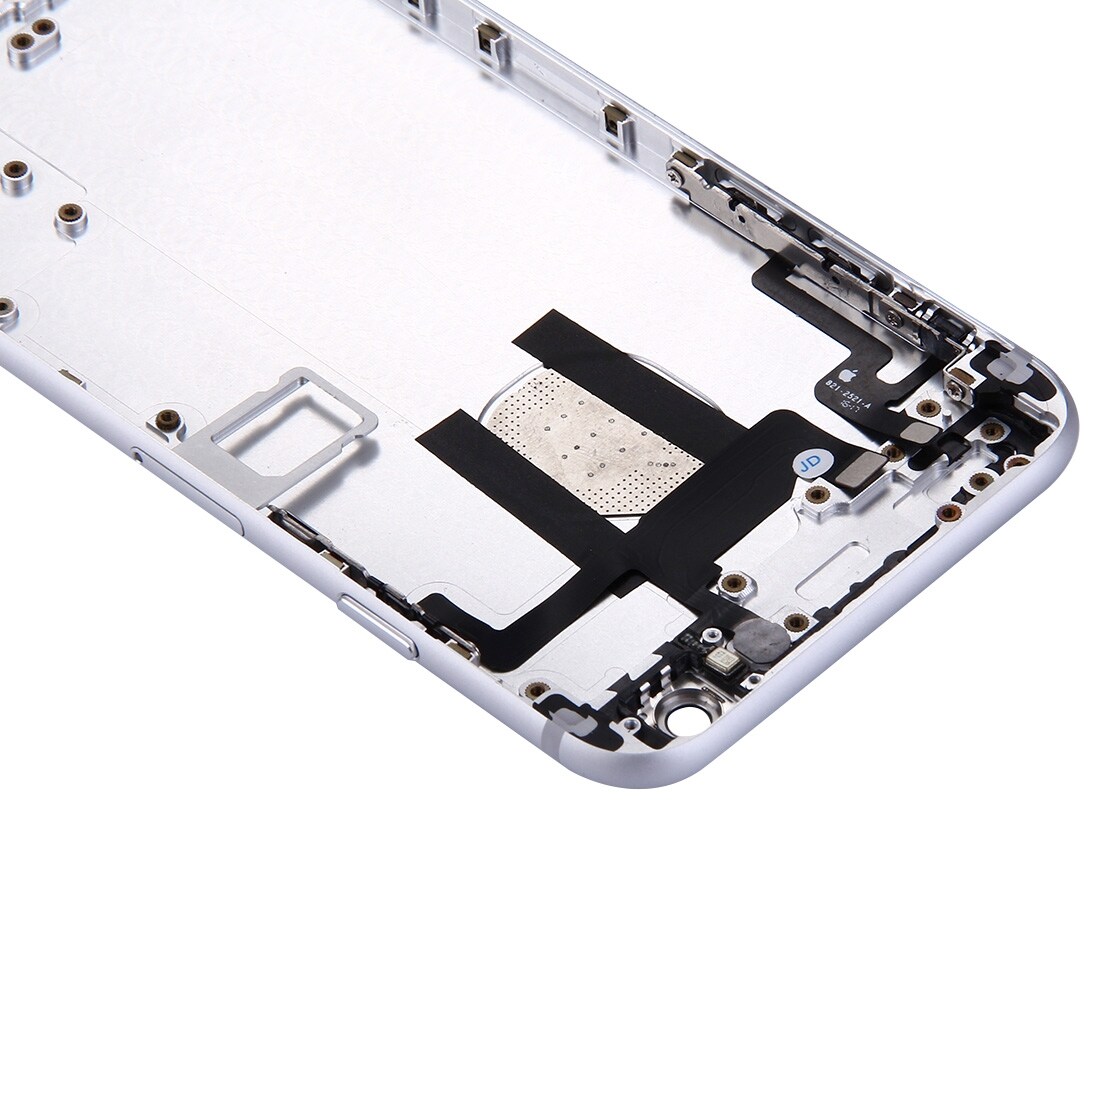 Komplett skallbytte iPhone 6 -Sølv